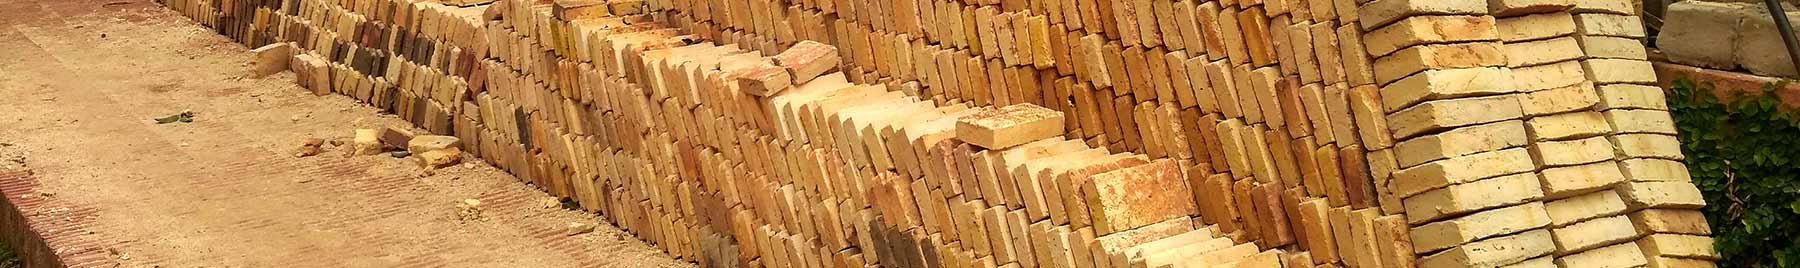 bricks stacked and waiting